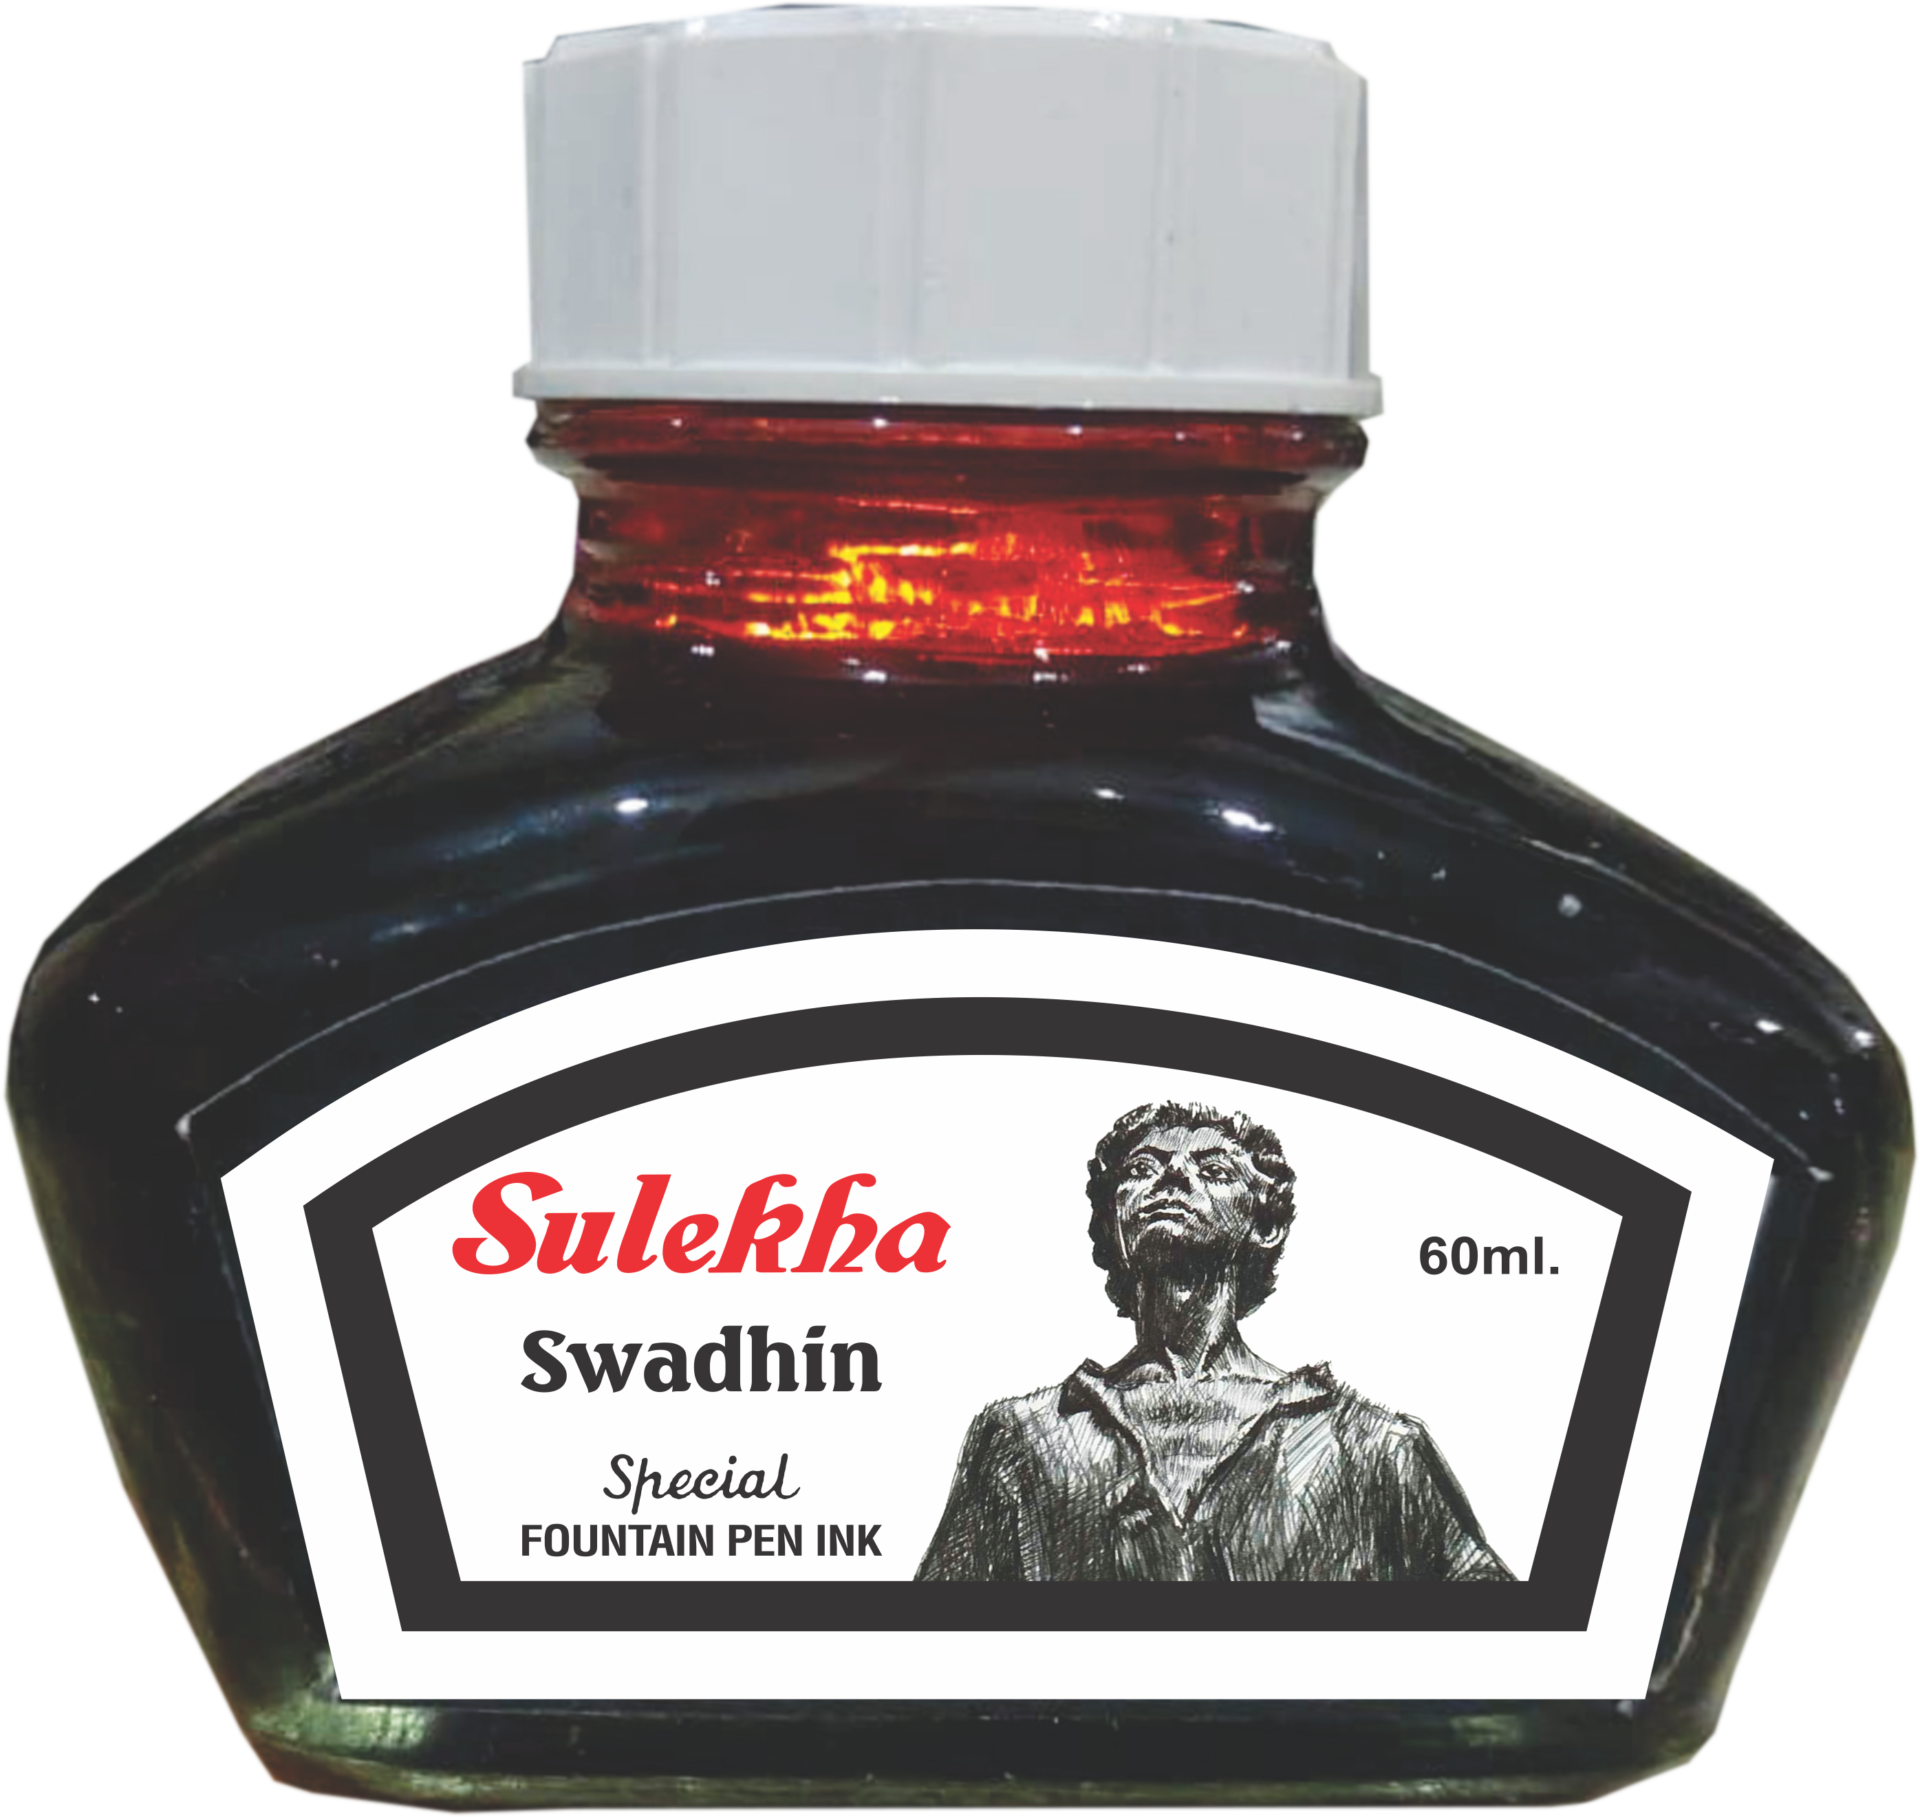 Sulekha launches Swadhin